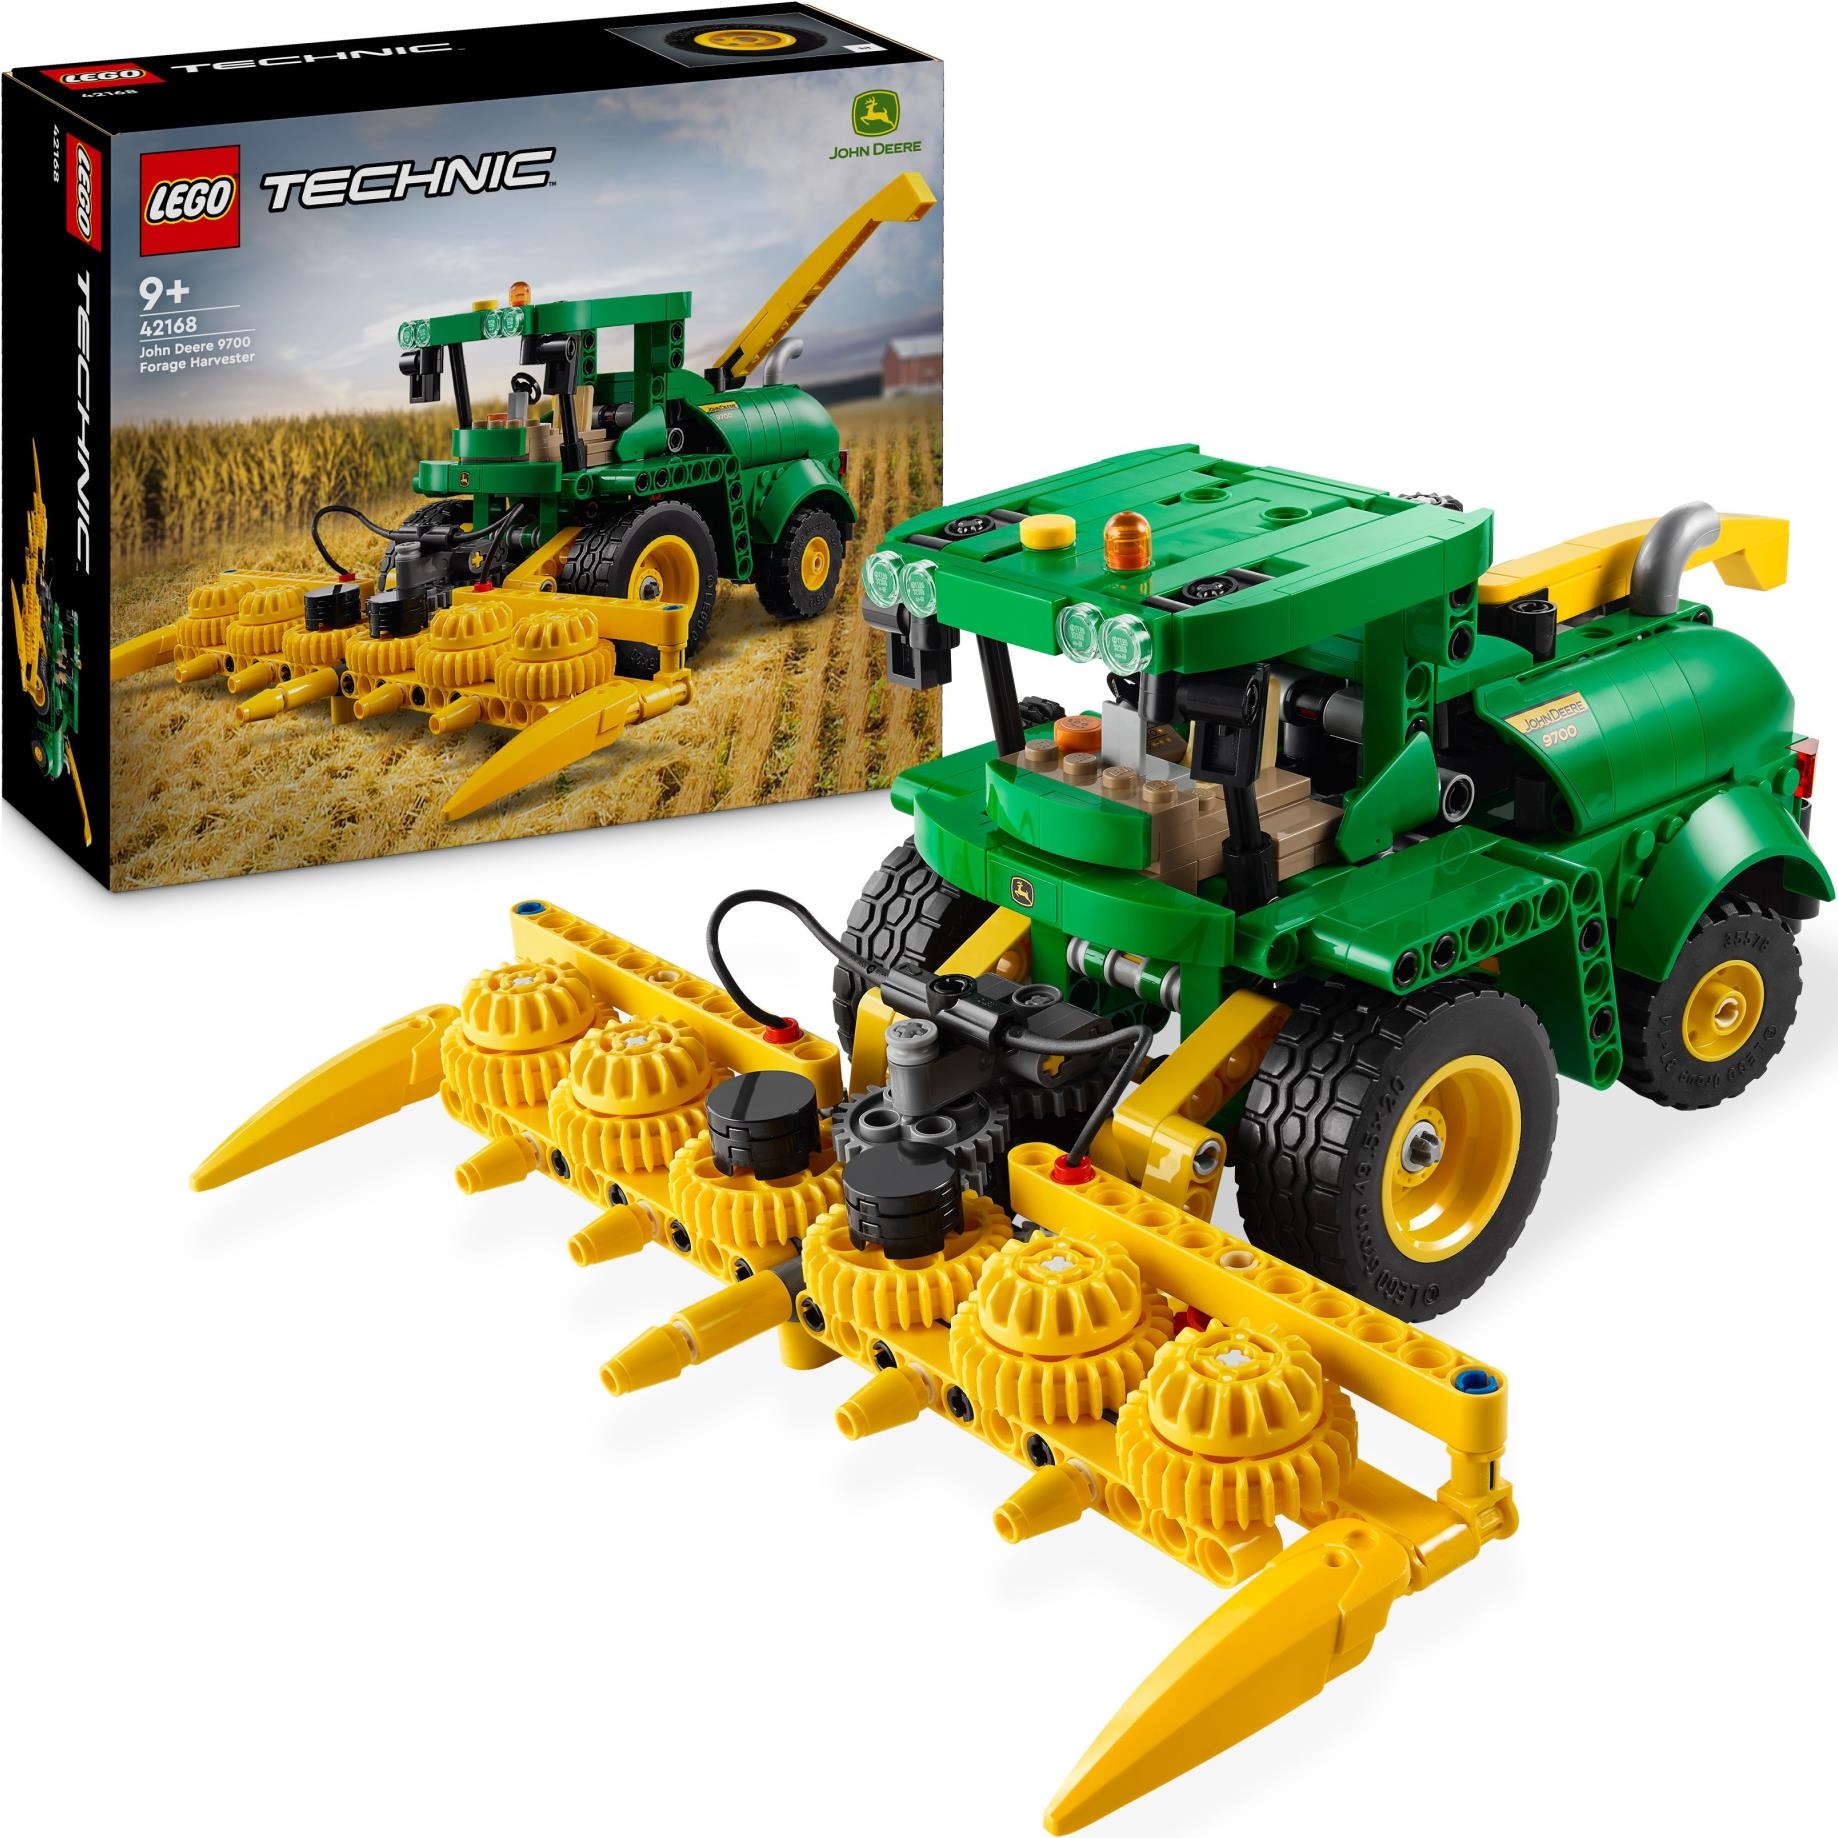 Lego: 42168 - Technic - John Deere 9700 Forage Harvester